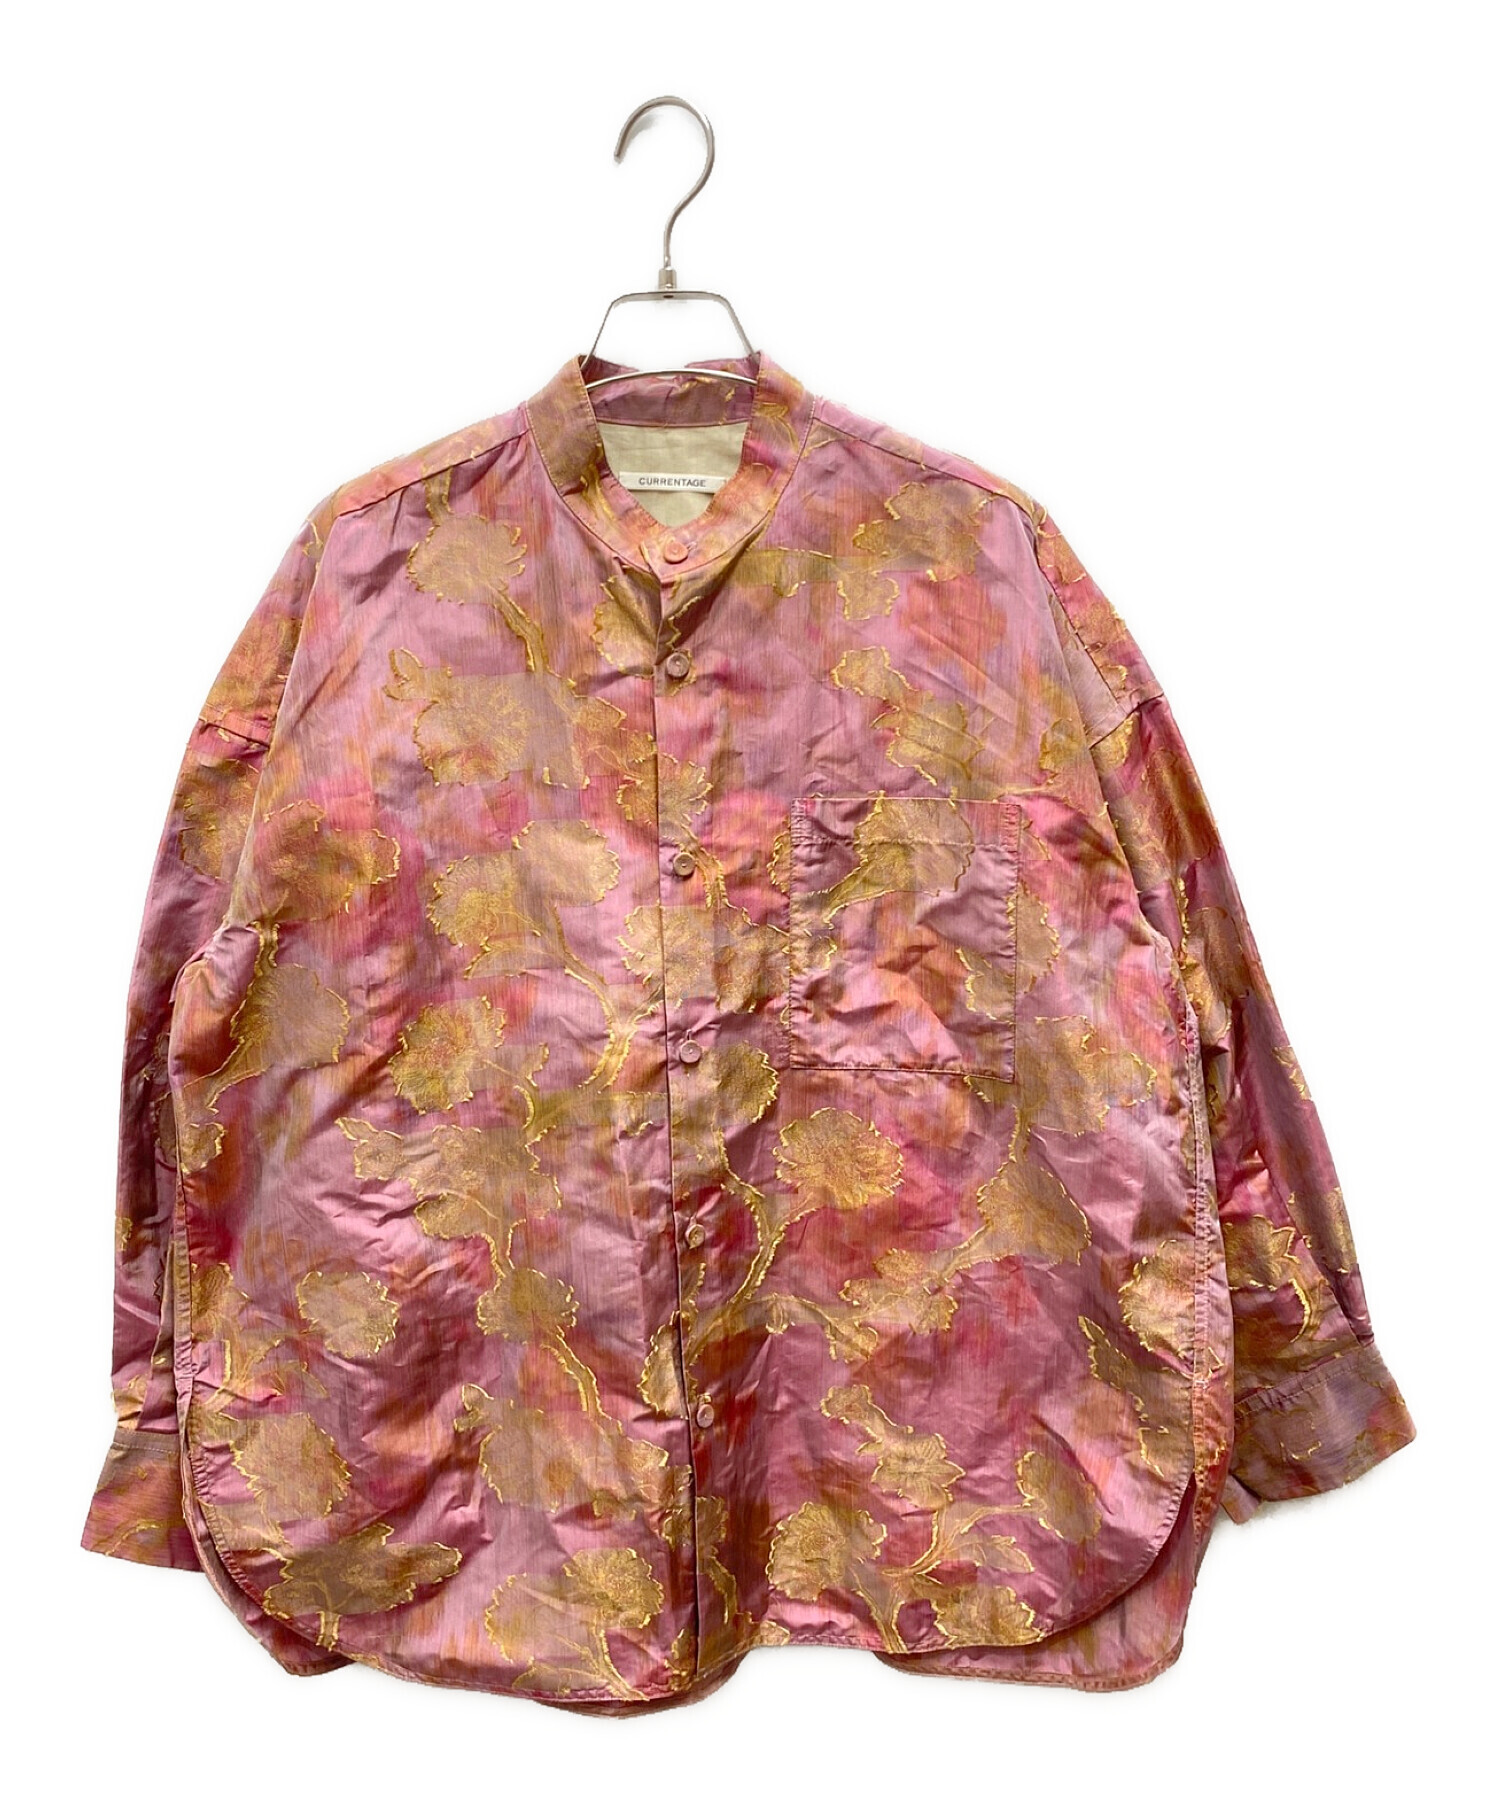 CURRENTAGE (カレンテージ) IKATスタンドカラーシャツ ピンク サイズ:不明【記載なし】